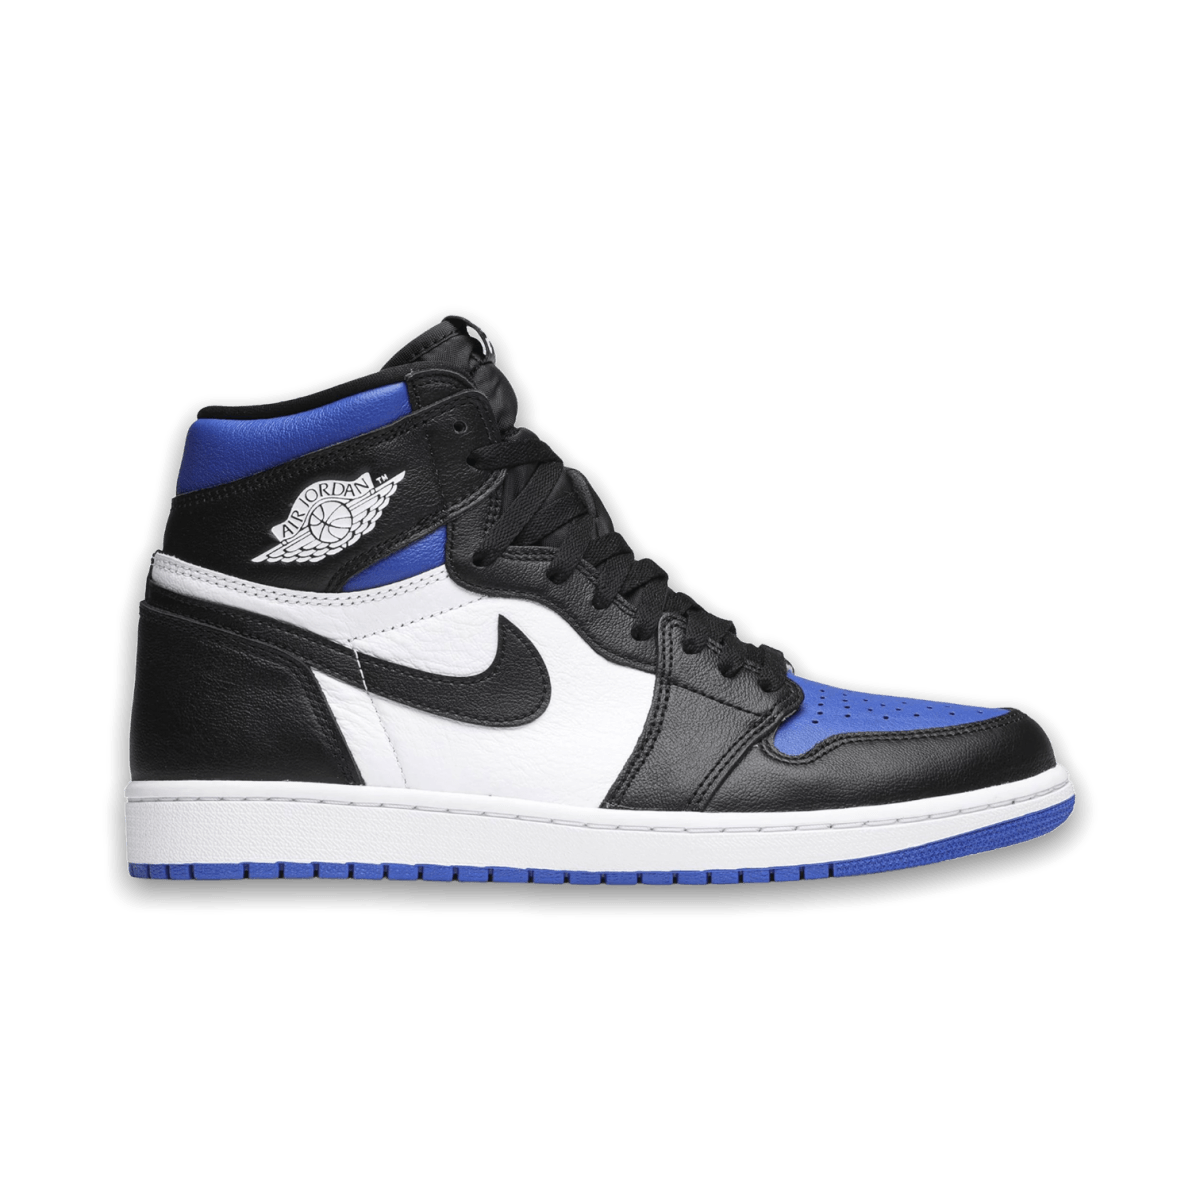 Jordan 1 Retro High OG 'Royal Toe' - High Sneaker - Jordan - Jawns on Fire